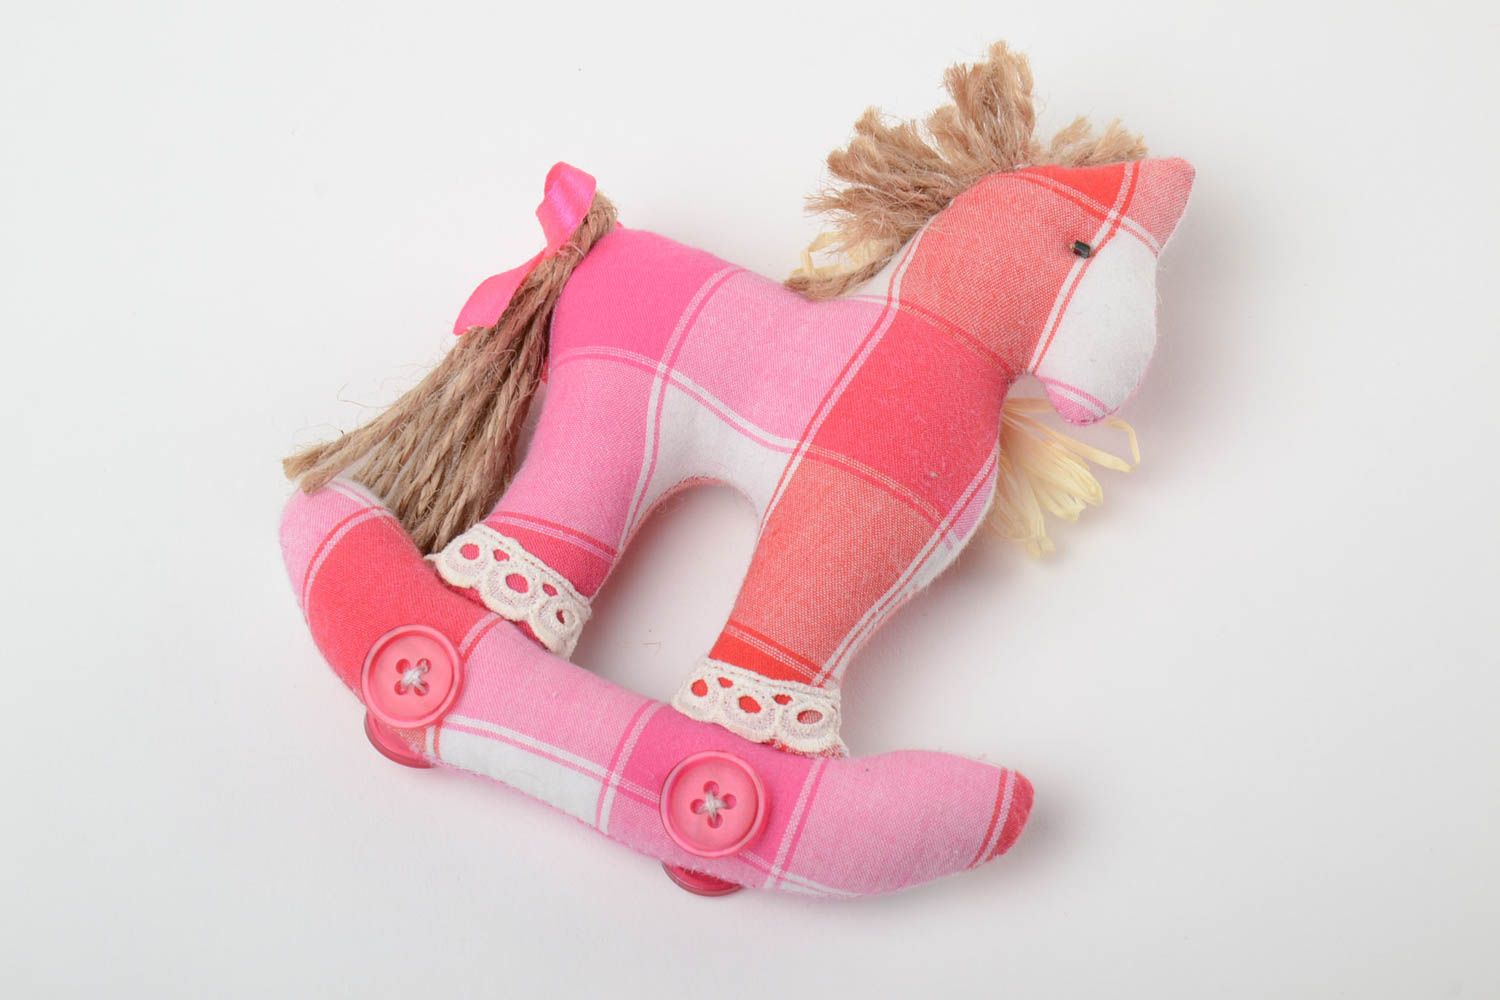 Schönes handmade Textil Kuscheltier Pferd aus Kattun in Rosa mit Rädern künstlerisch foto 2